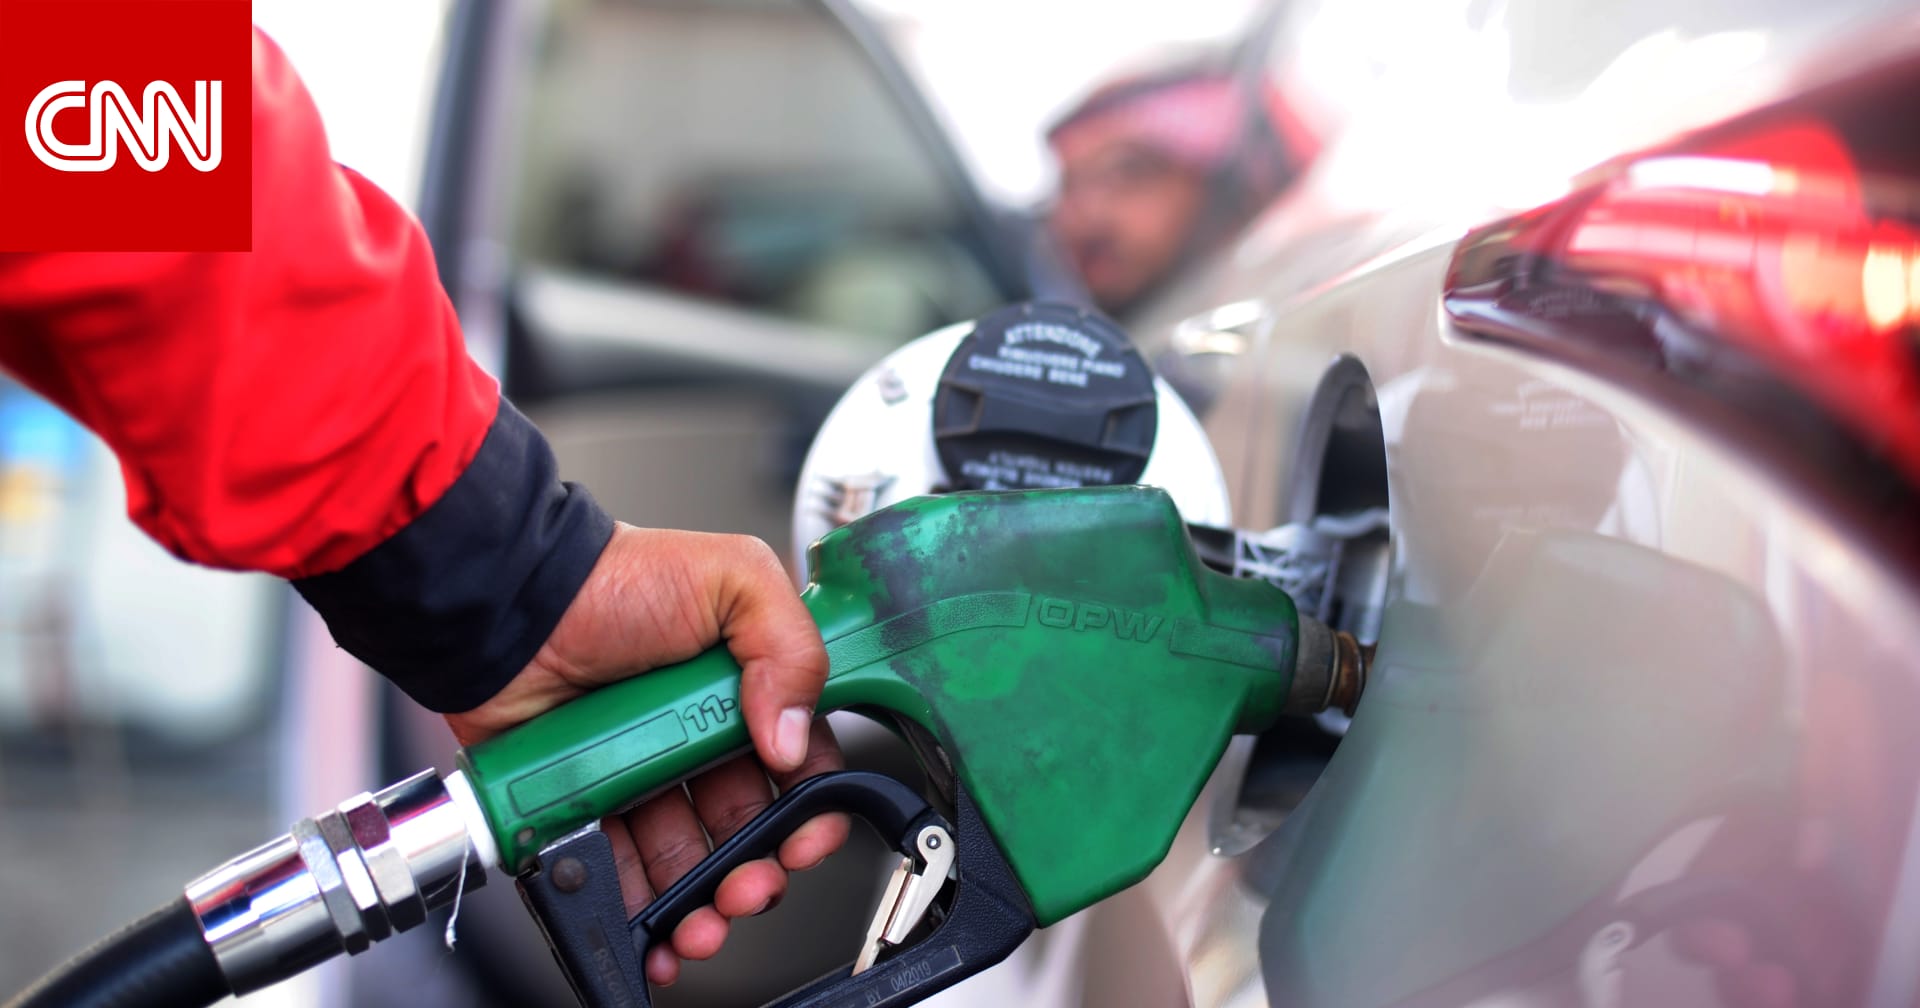 “طالع” تسعيرة البنزين الجديدة لشهر اغسطس 2022 وفقا لقرار شركة ارامكو بالمملكة العربية السعودية